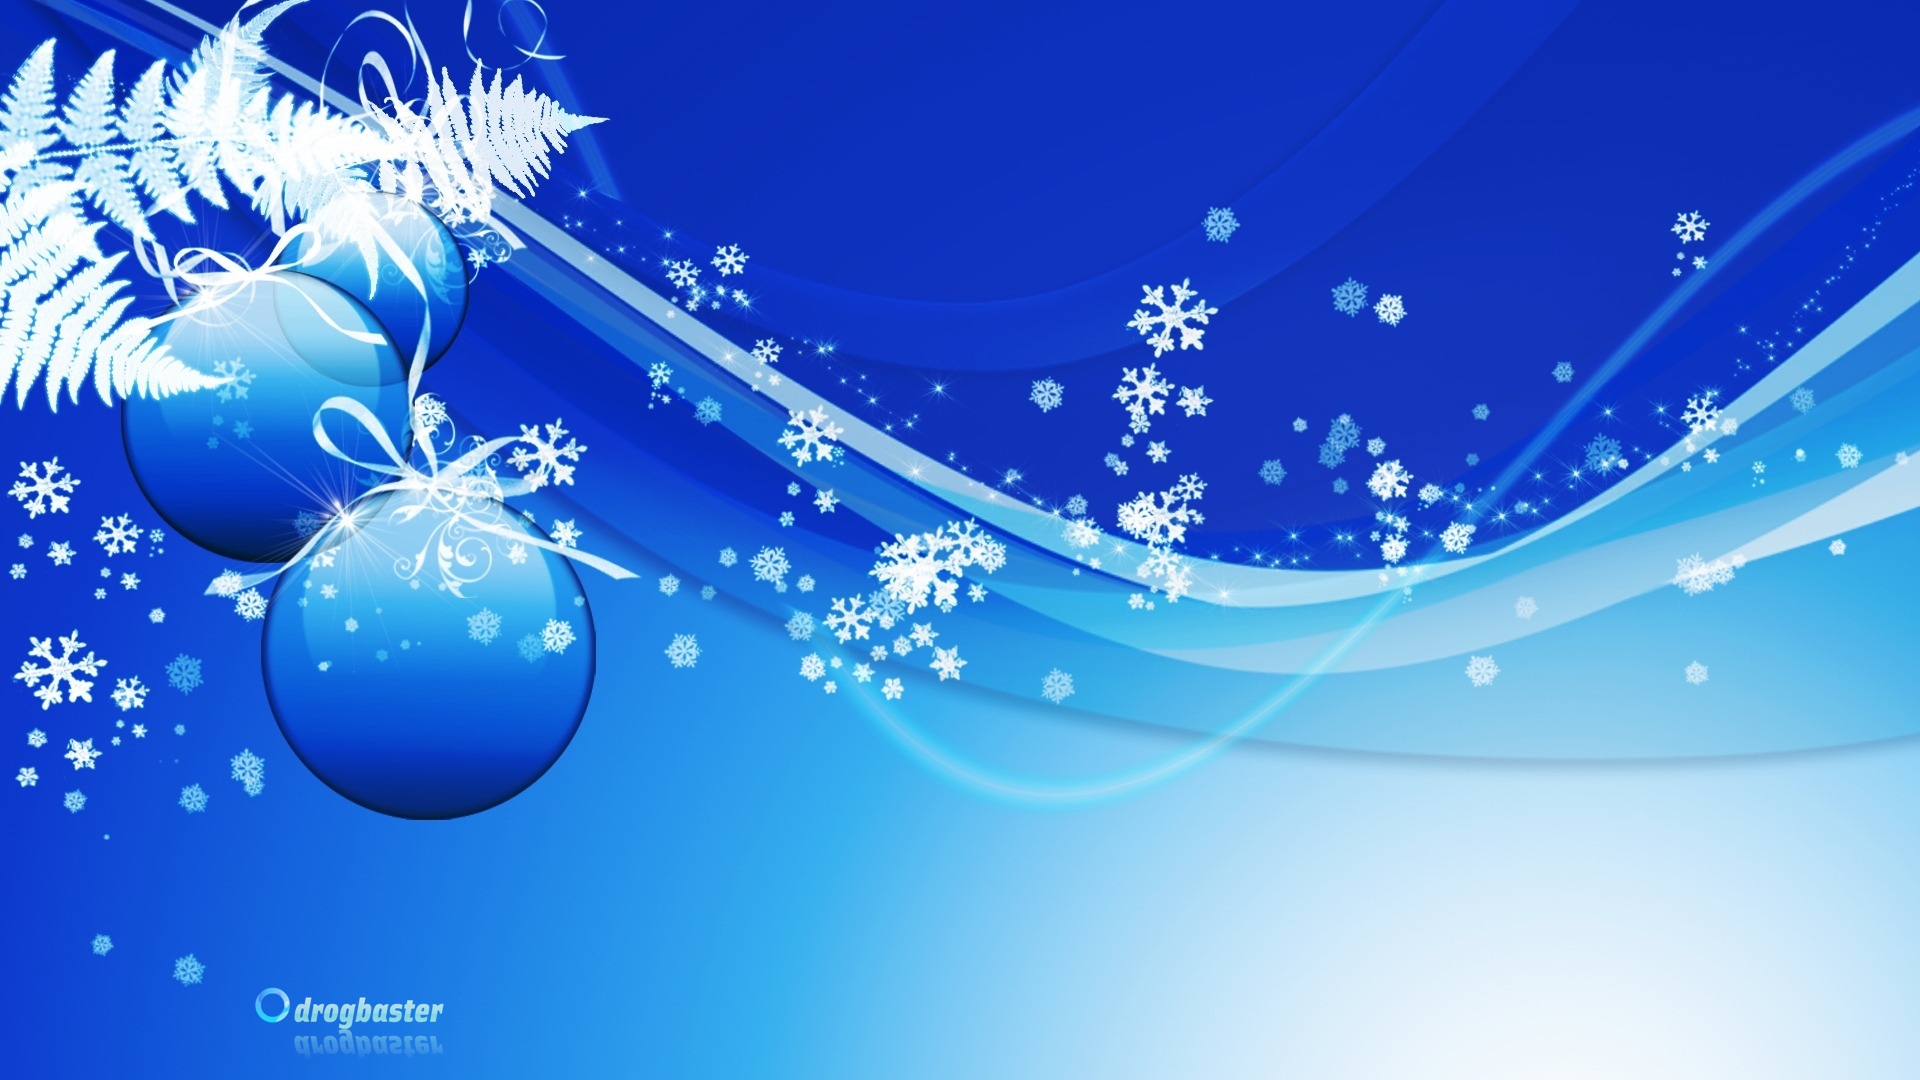 Immagini Natale Per Desktop.Sfondi Wallpapers Tema Natalizio Sfondi Di Natale Gratis